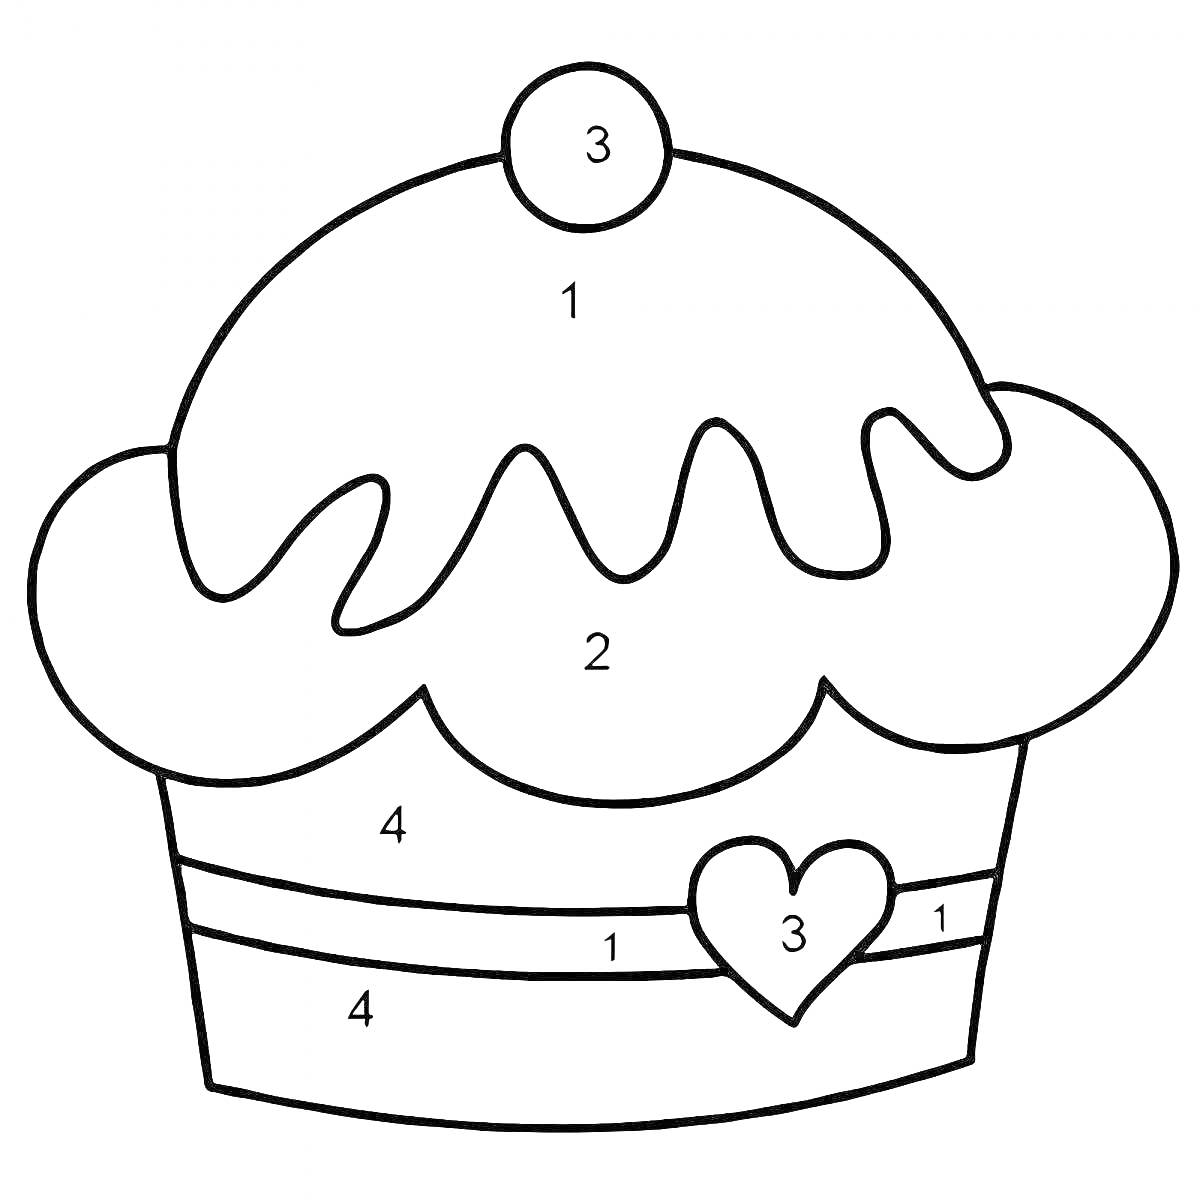 Раскраска Раскраска по номерам для малышей - кекс с глазурью, вишенкой и сердечком